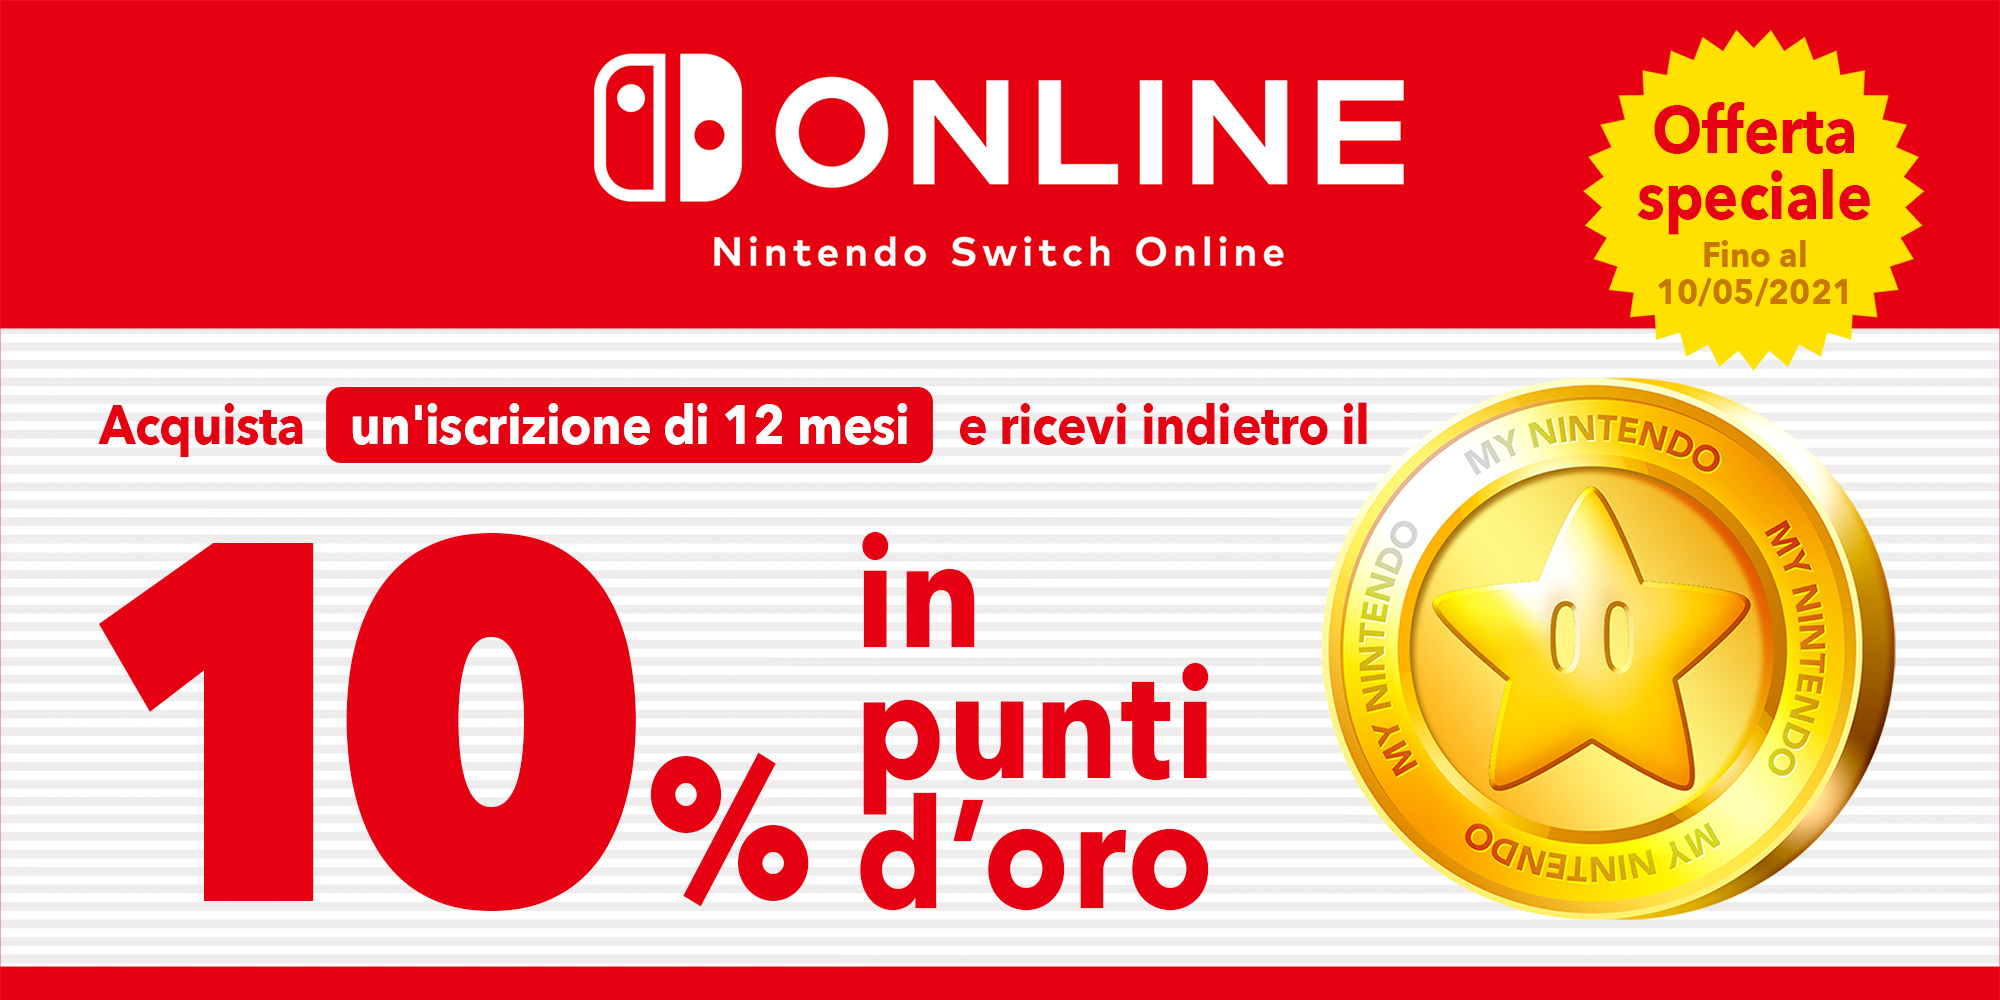 Offerta speciale: ottieni fino a 4,90 CHF in punti d'oro con un'iscrizione di 12 mesi a Nintendo Switch Online!